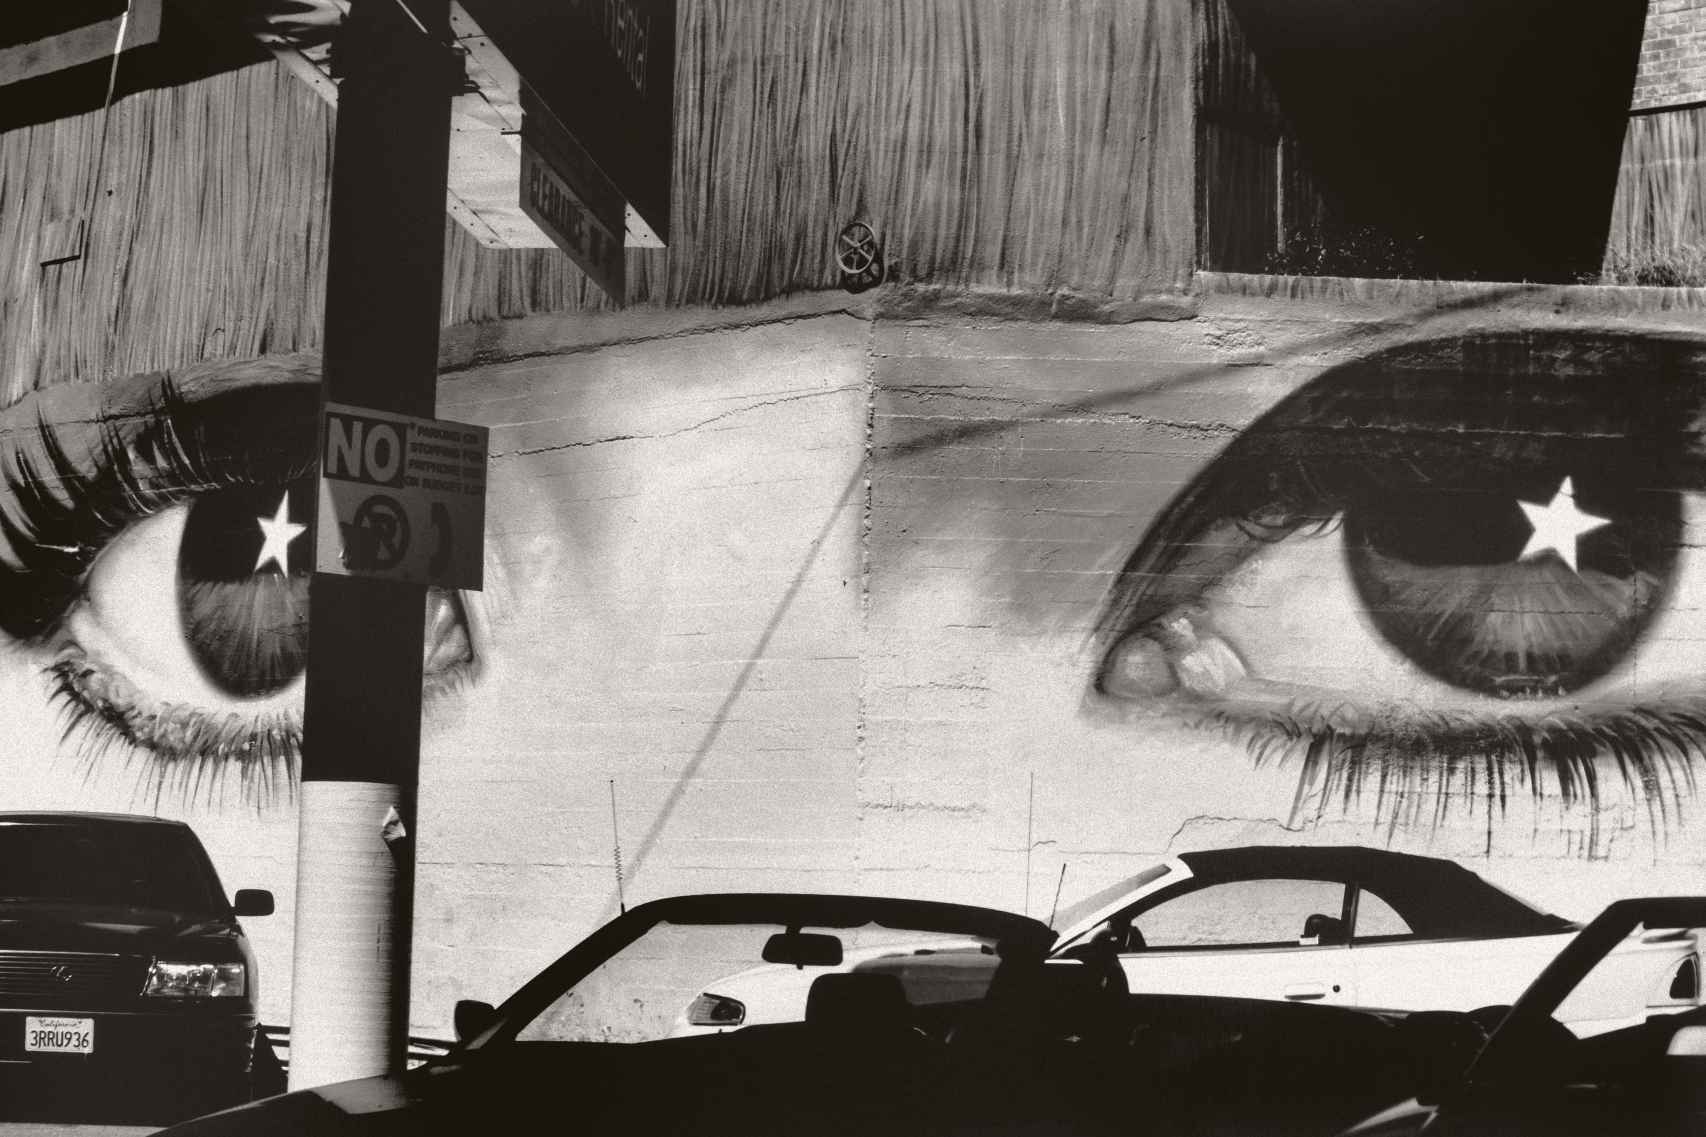 La mirada sobre el mundo, Los Ángeles, 1997